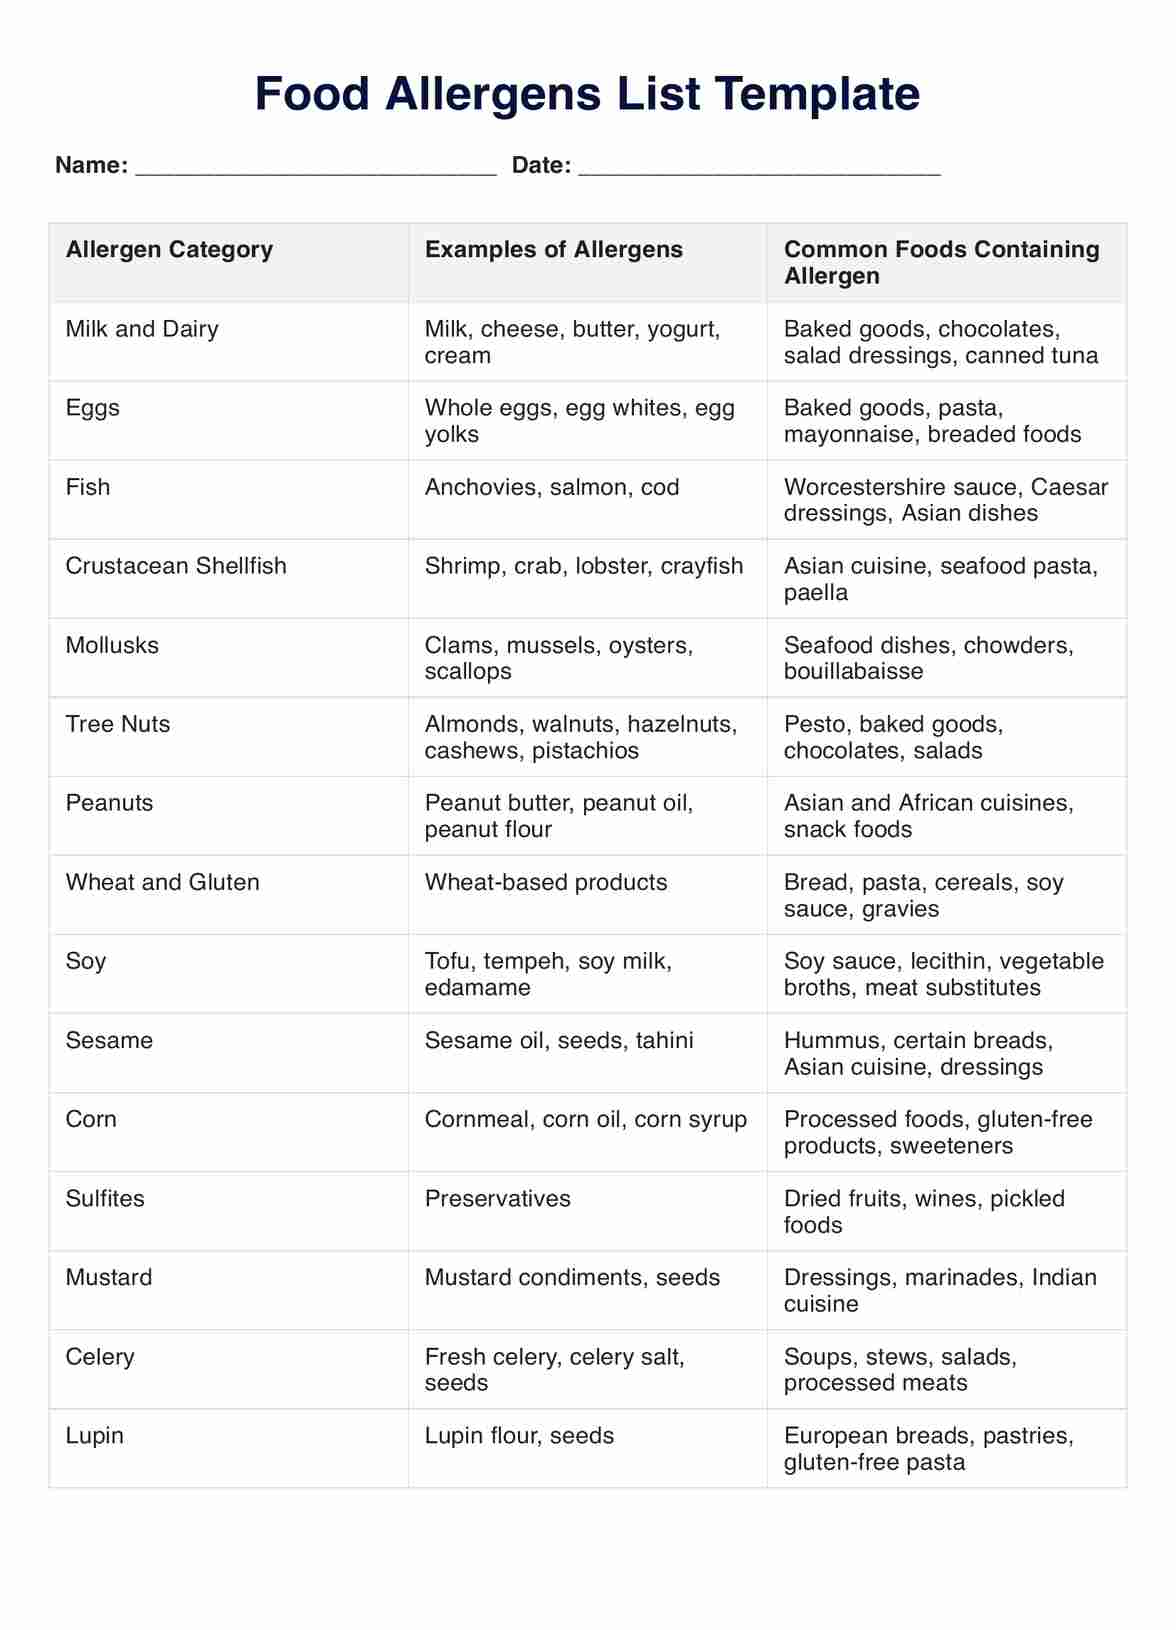 Food Allergens List PDF Example